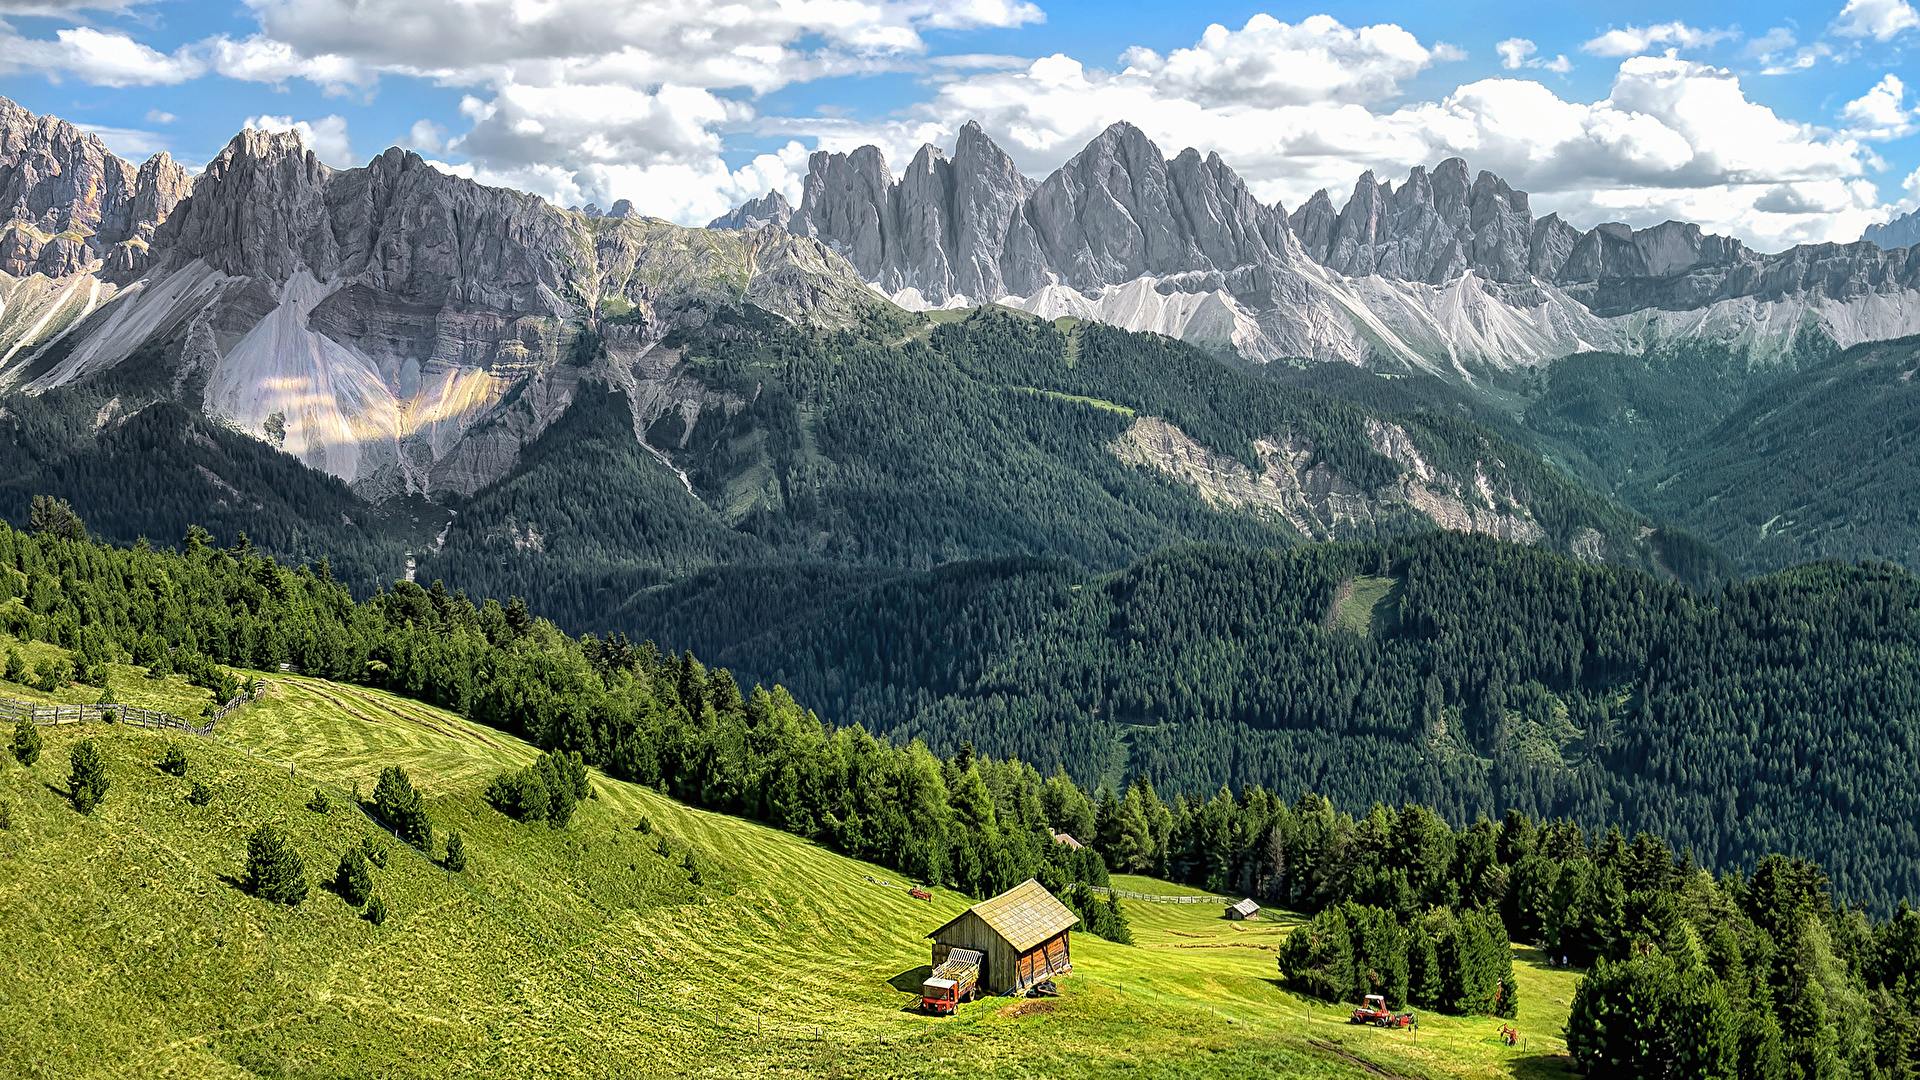  Bilder  von Alpen  Italien Bressanone Natur Gebirge W lder 